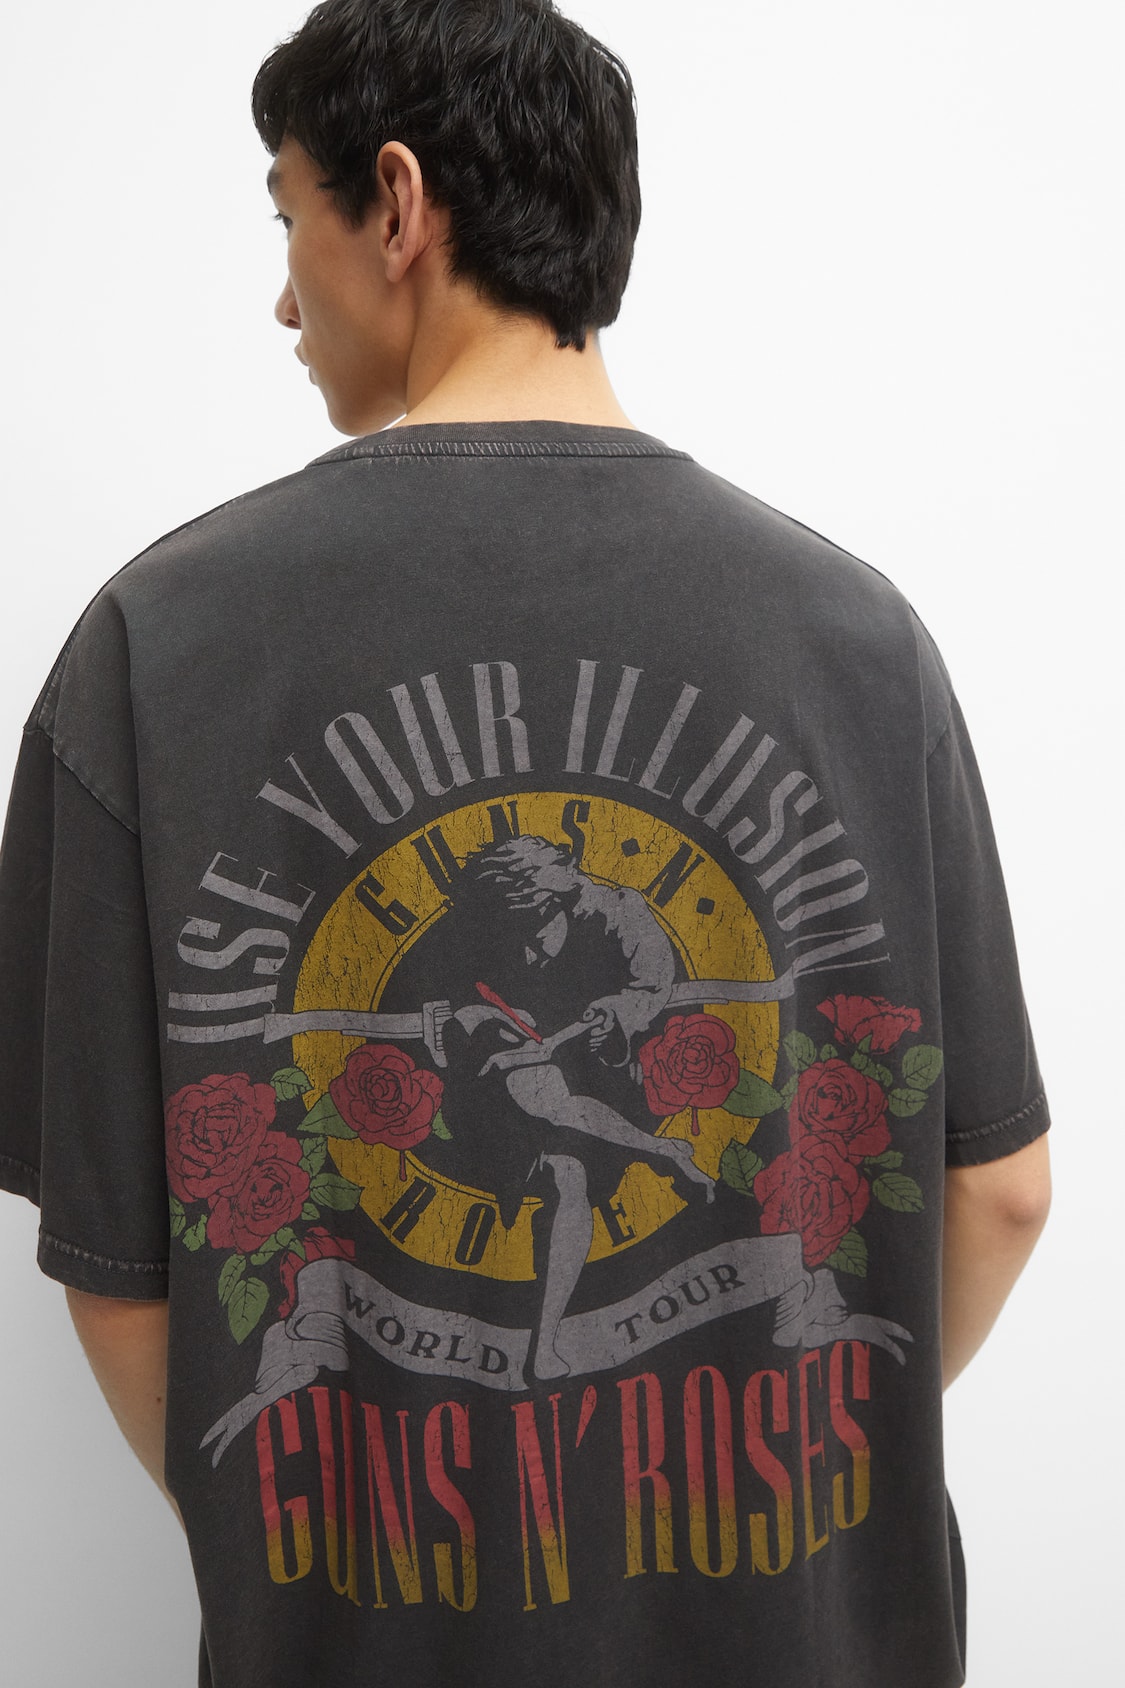 Guns N 'Roses World T-shirt - pull&bear